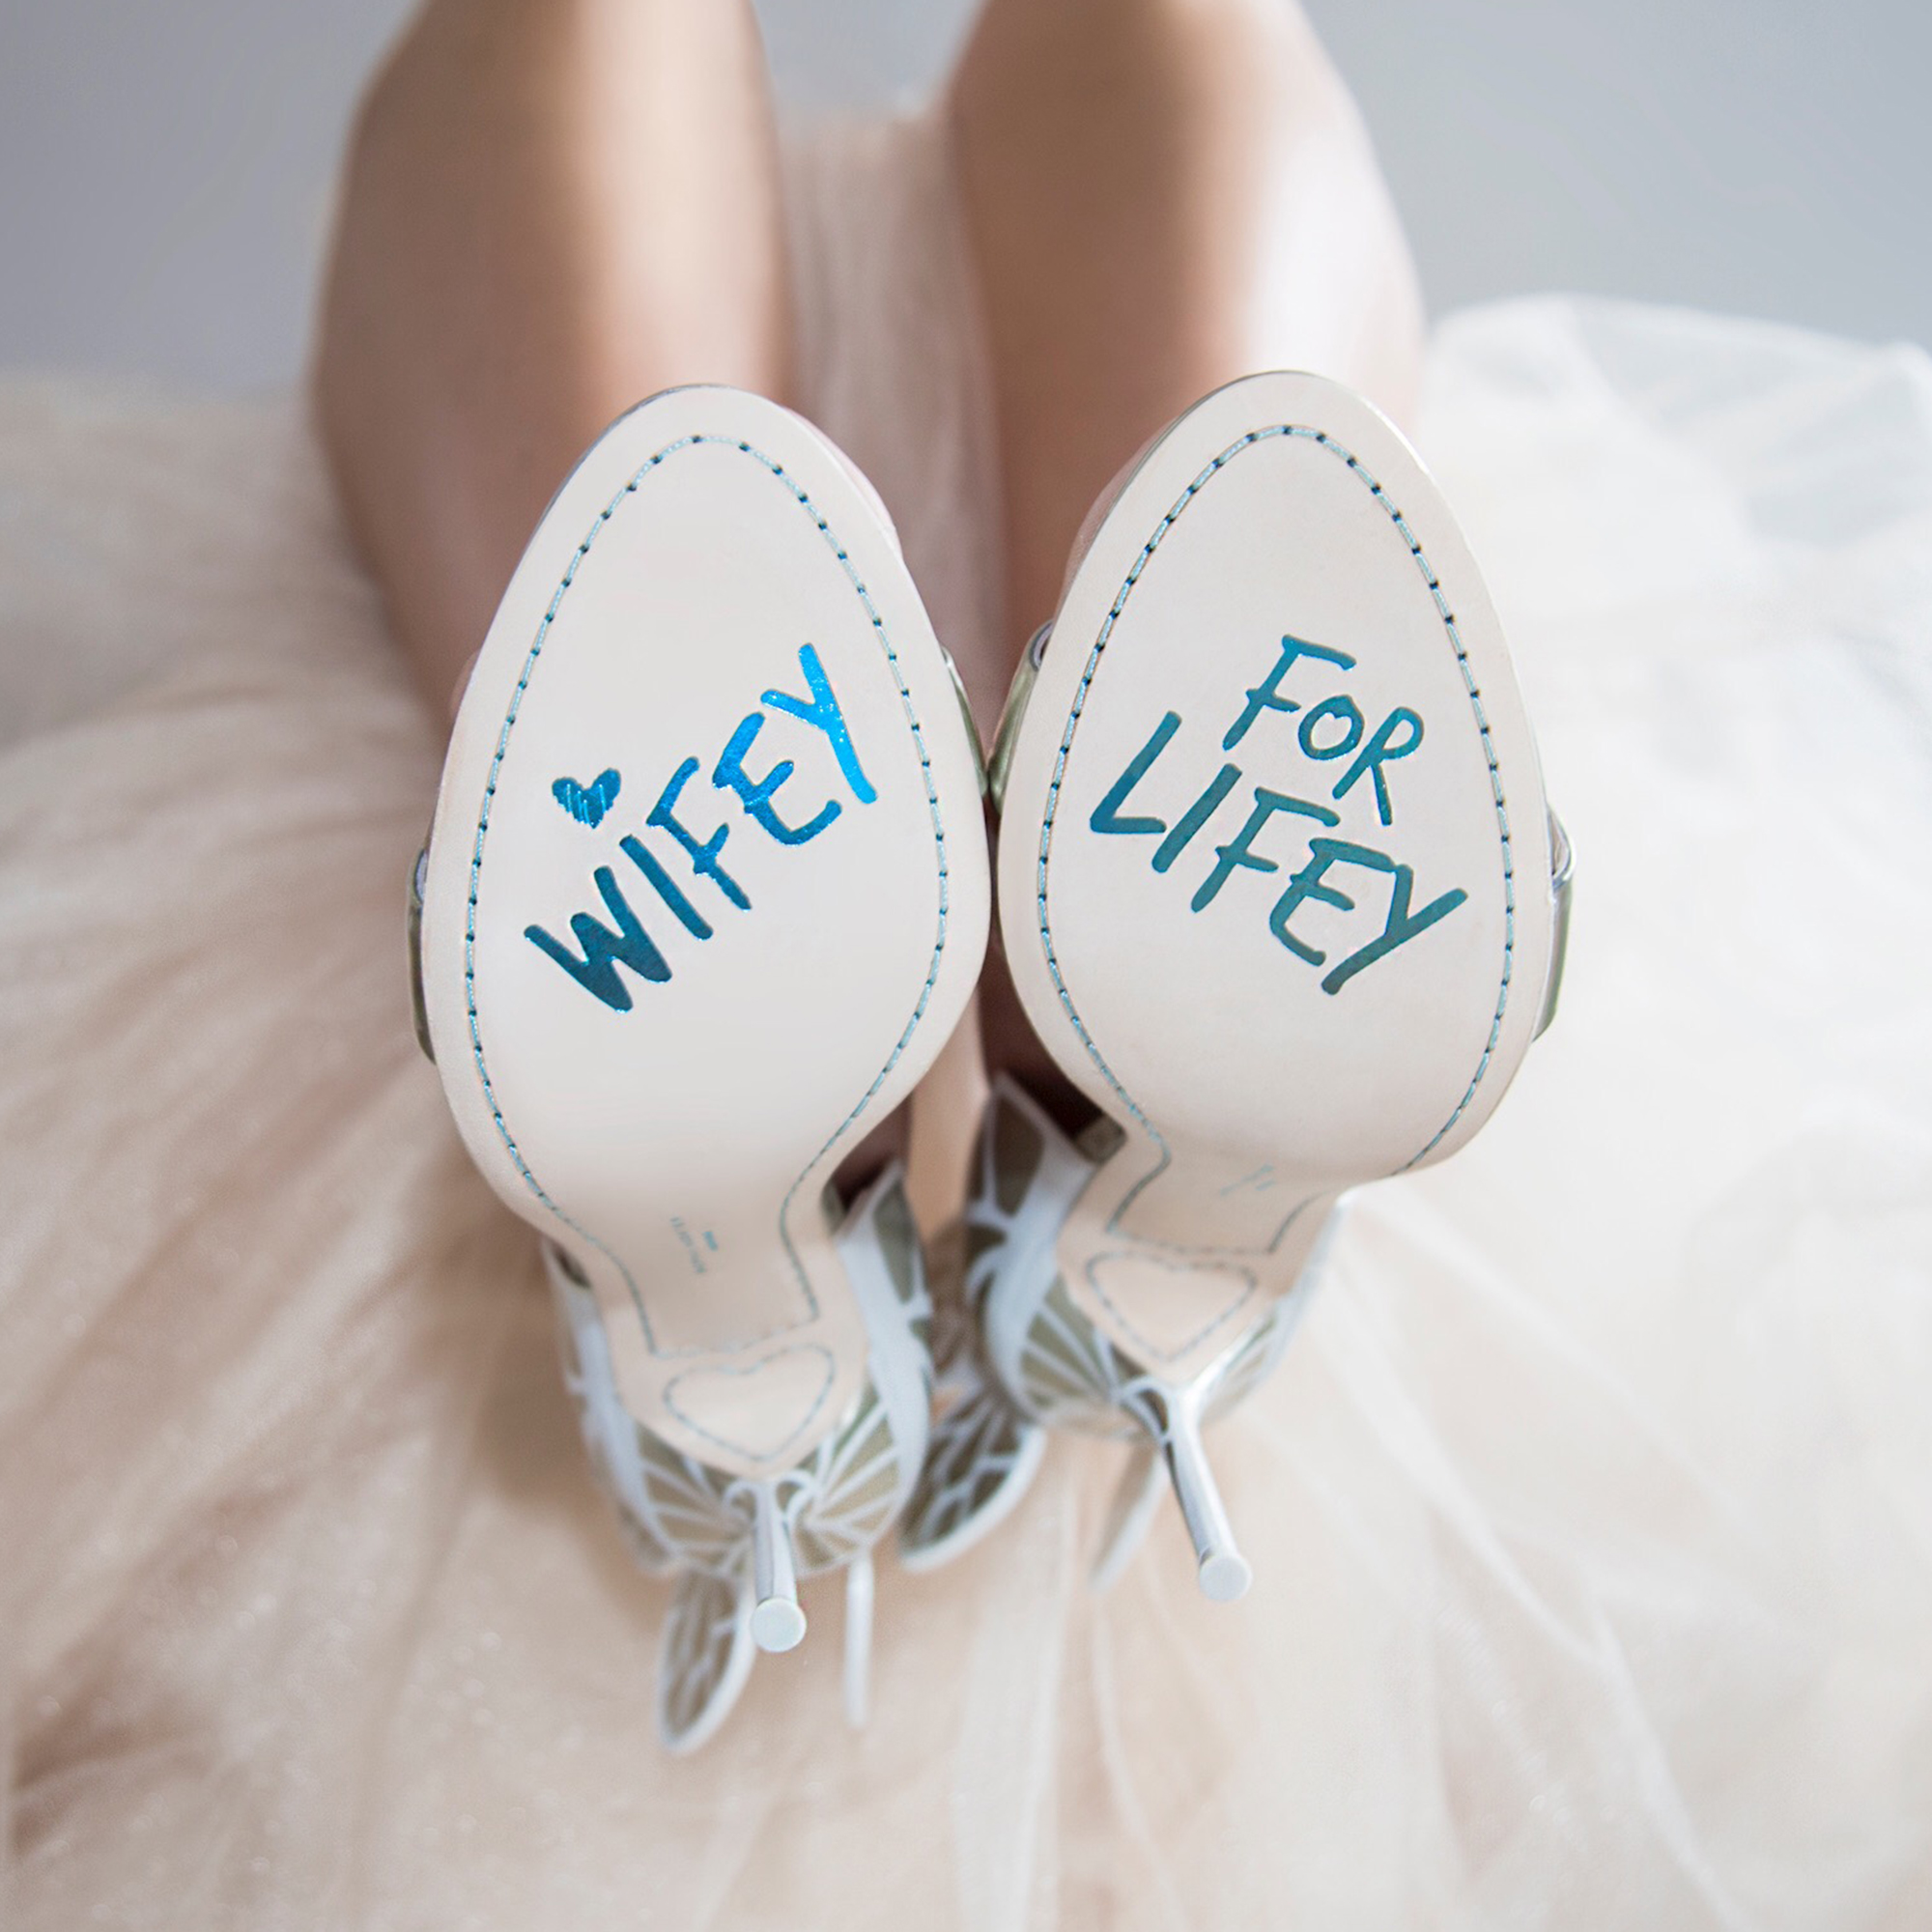 sophia webster wedding heels